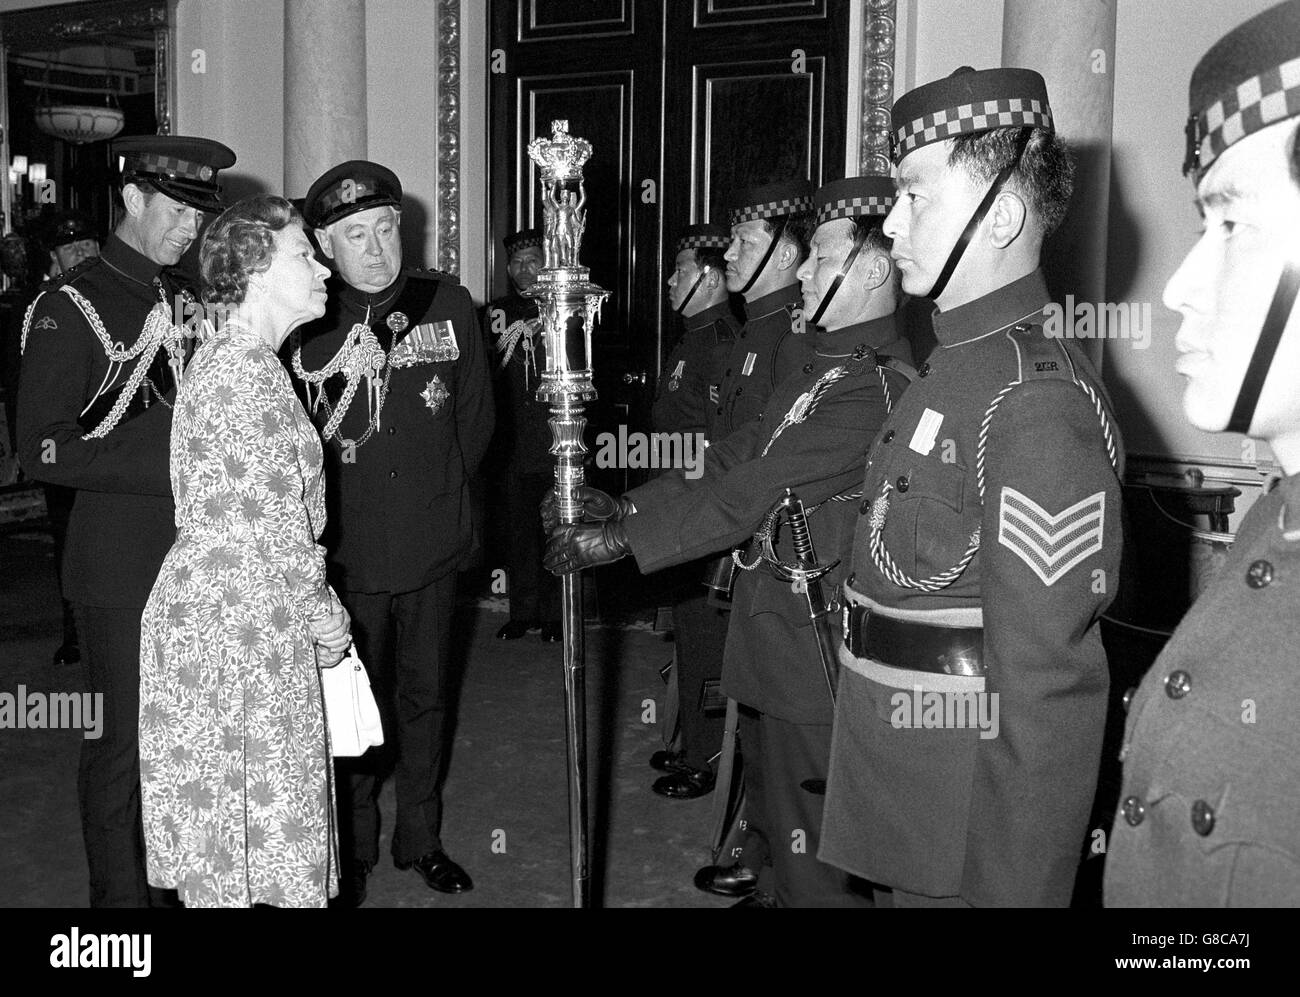 La reine Elizabeth II, surveillée par le prince de Galles et le maréchal Sir Edwin Bramall (3e à gauche) inspecte le matraque de la reine gardé par les Gurkhas du 2e roi Edward VII, lorsque le régiment a été reçu au palais de Buckingham.Ce n'est que la troisième fois depuis le couronnement de la Reine que la cérémonie a eu lieu. Banque D'Images